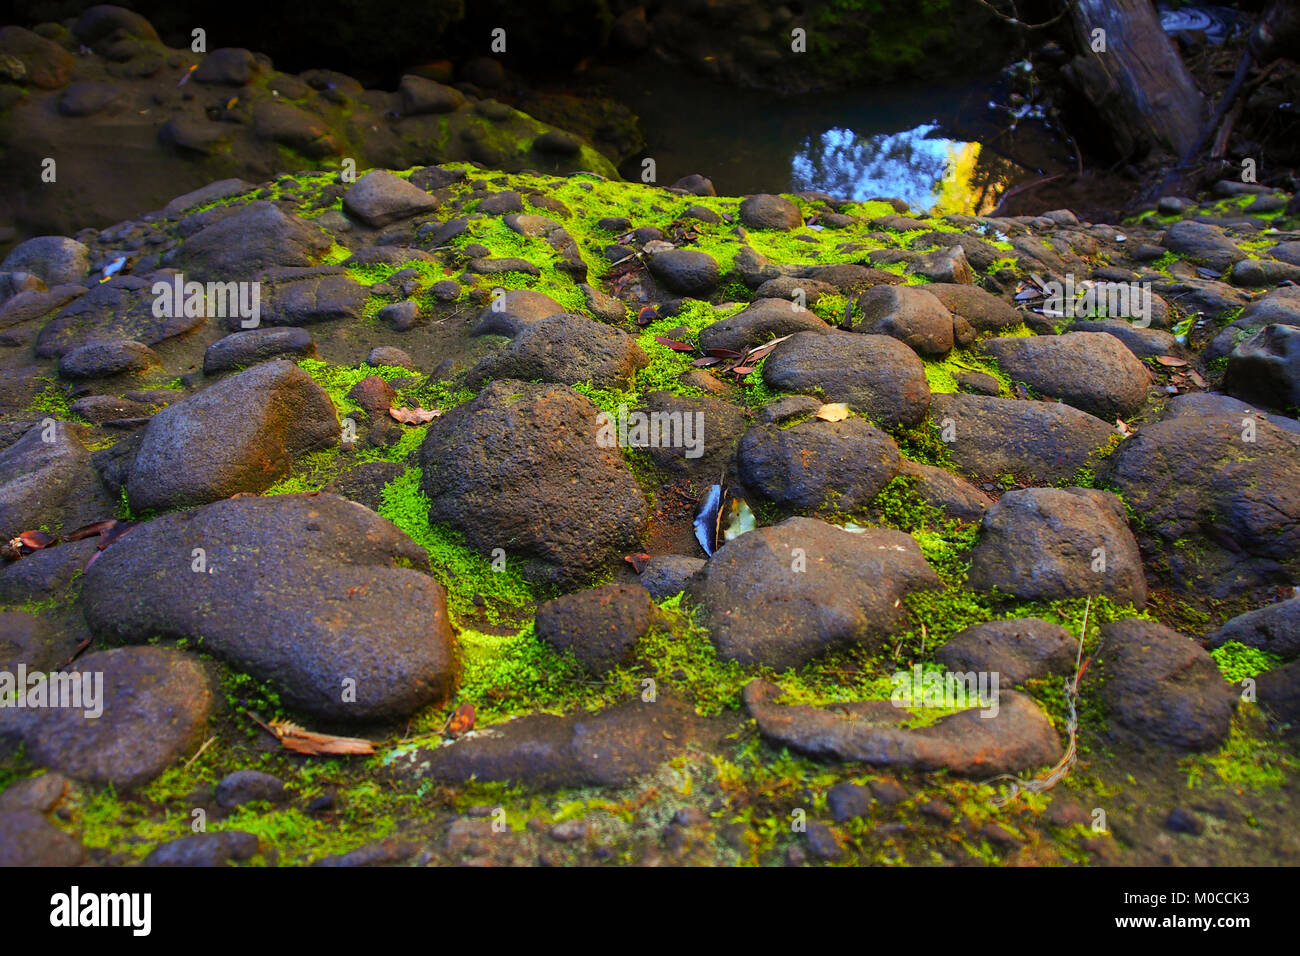 green moss growing in between rocks Stock Photo